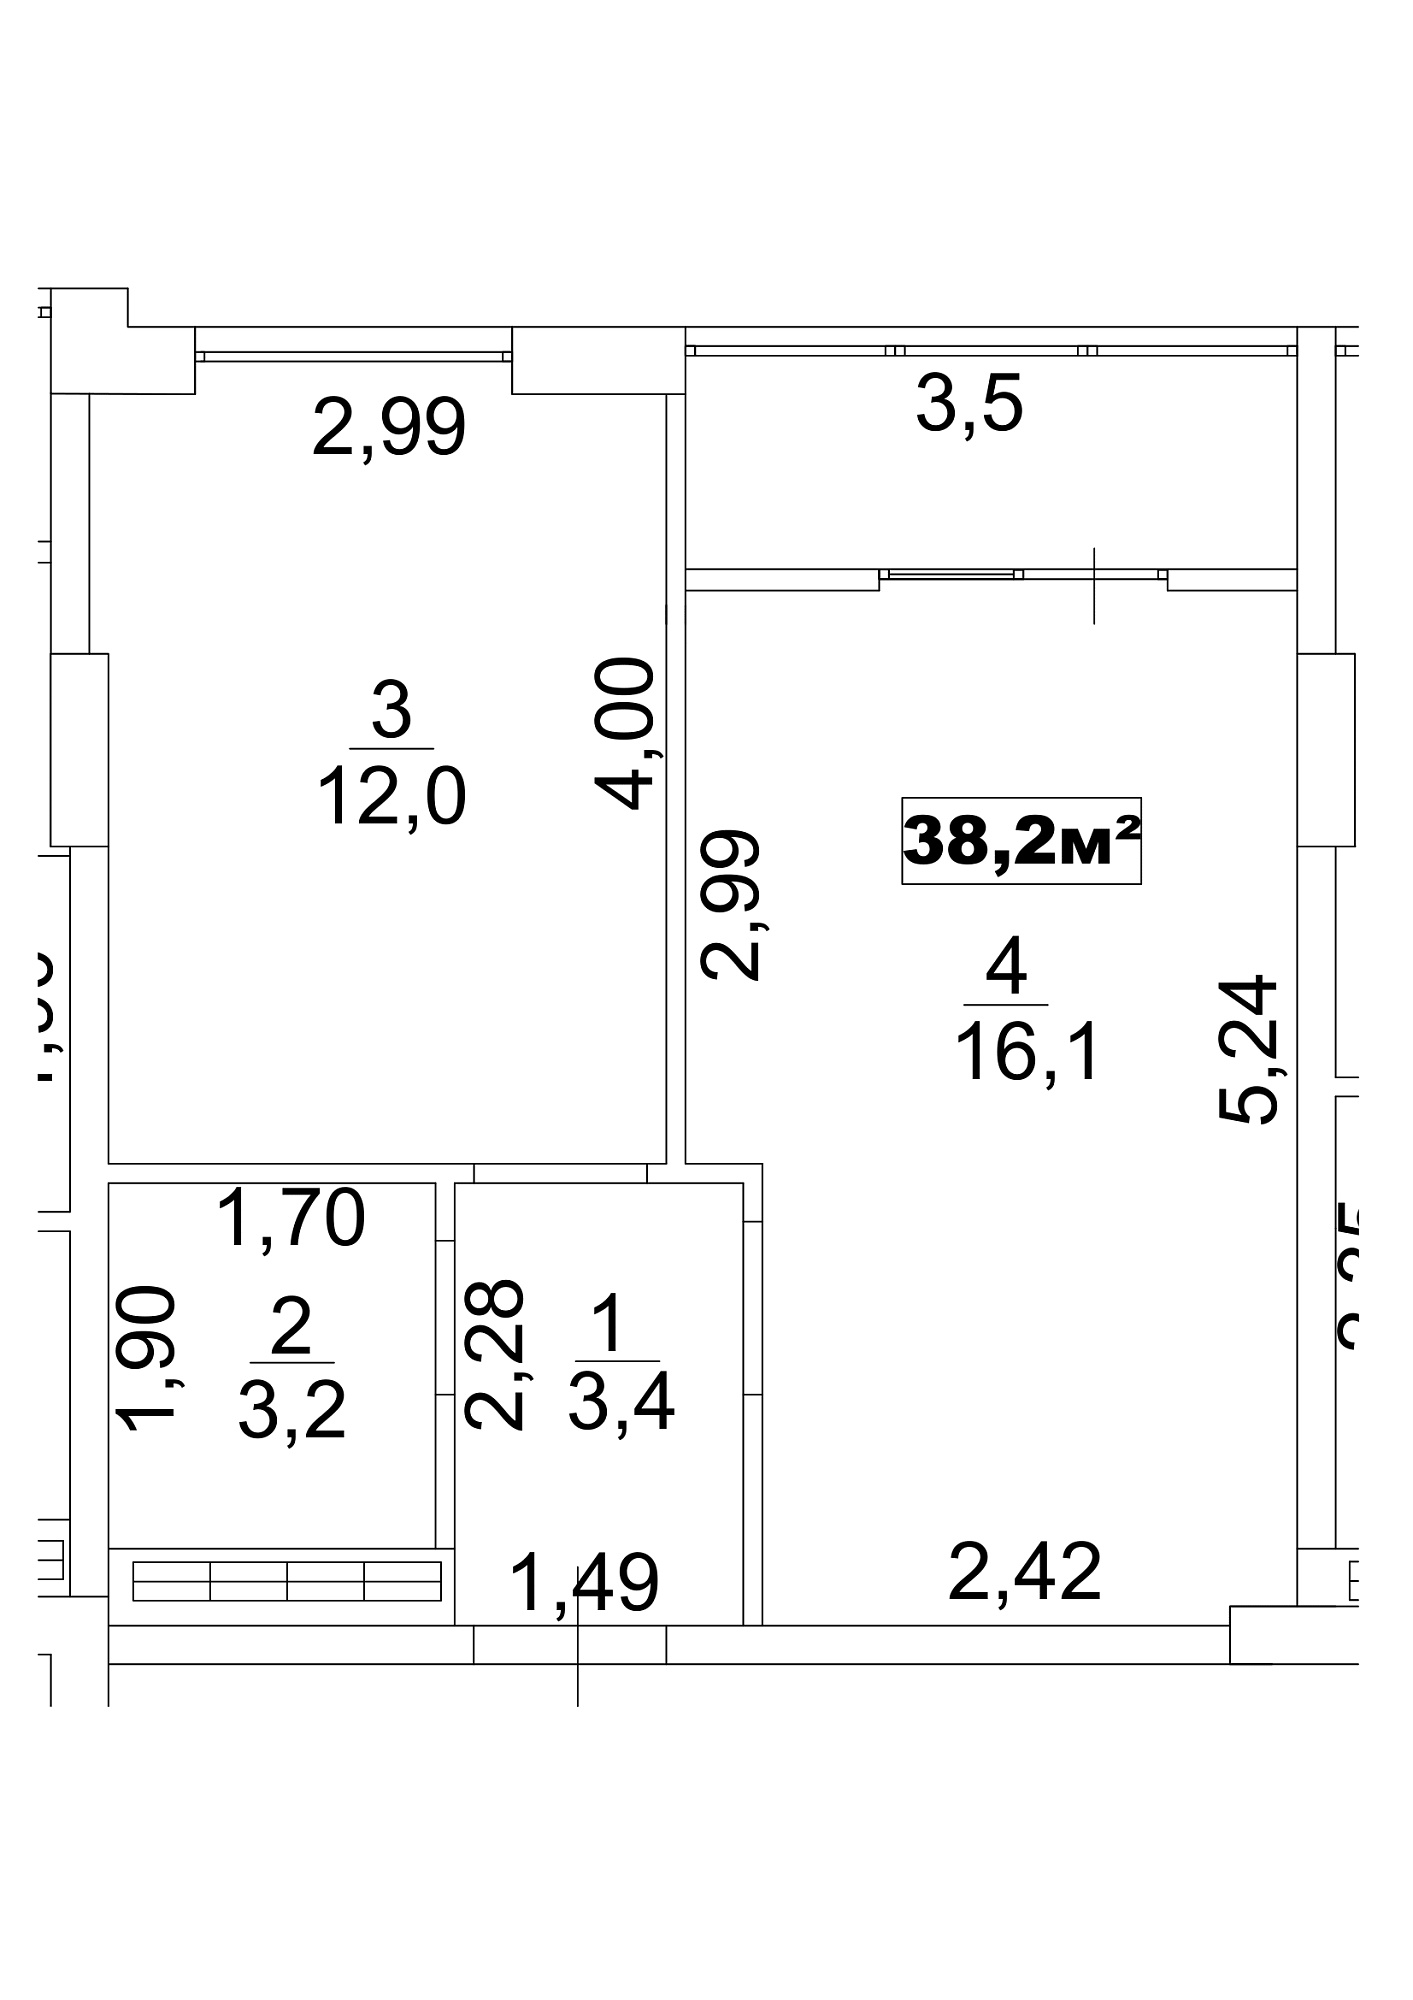 Планировка 1-к квартира площей 38.2м2, AB-13-10/00084.